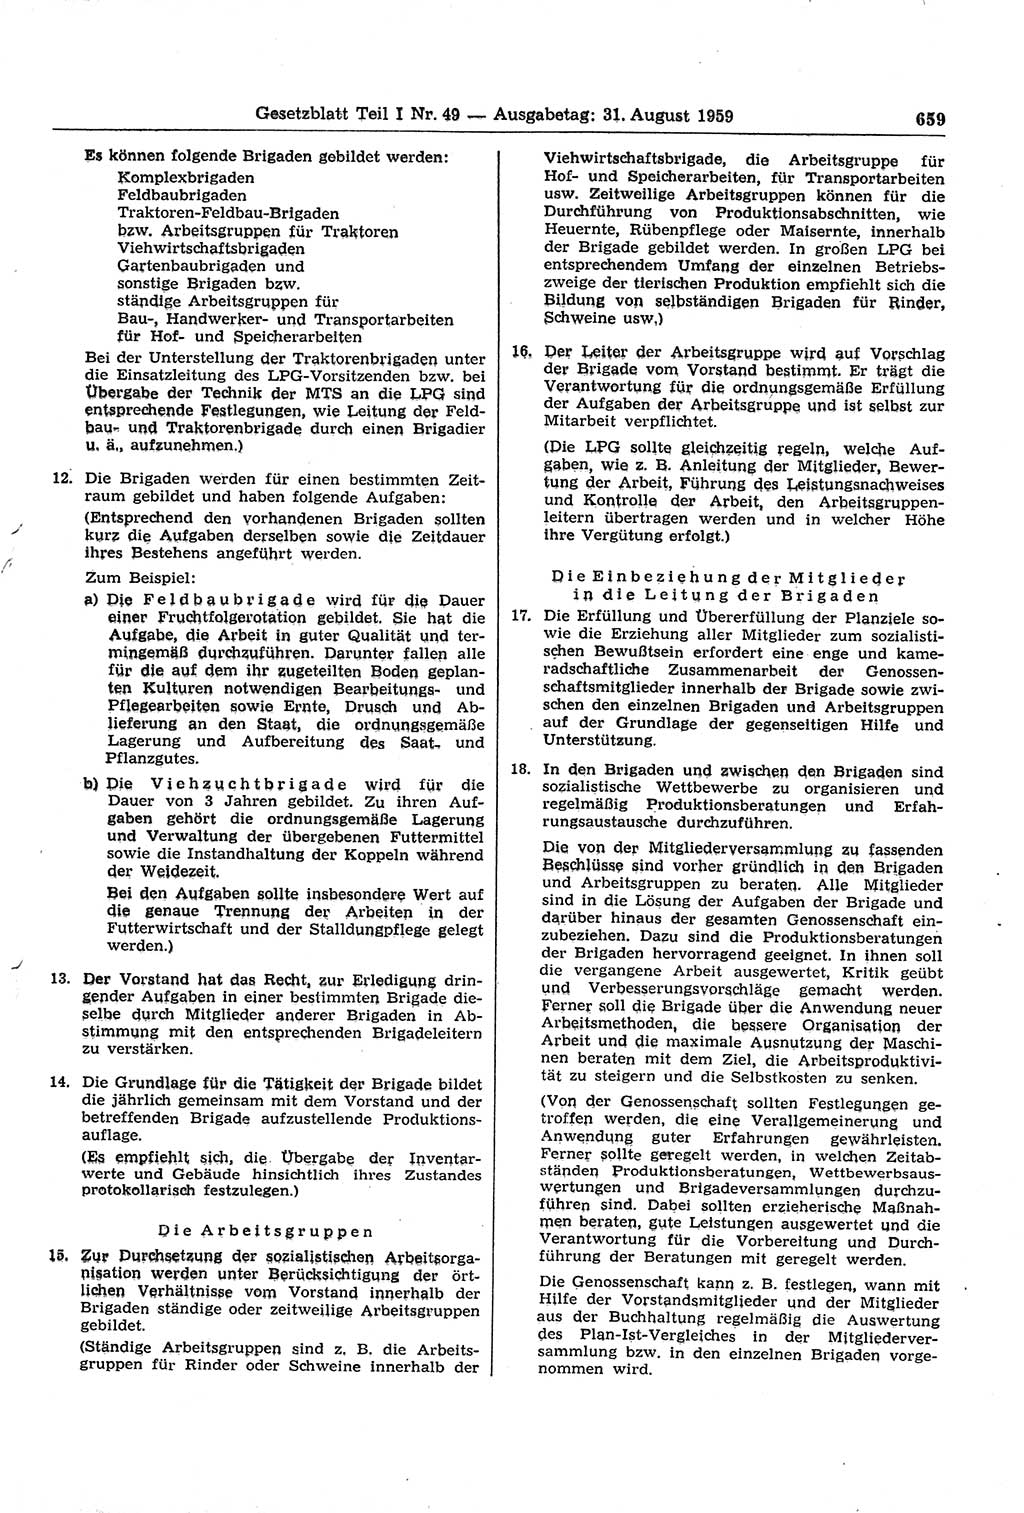 Gesetzblatt (GBl.) der Deutschen Demokratischen Republik (DDR) Teil Ⅰ 1959, Seite 659 (GBl. DDR Ⅰ 1959, S. 659)